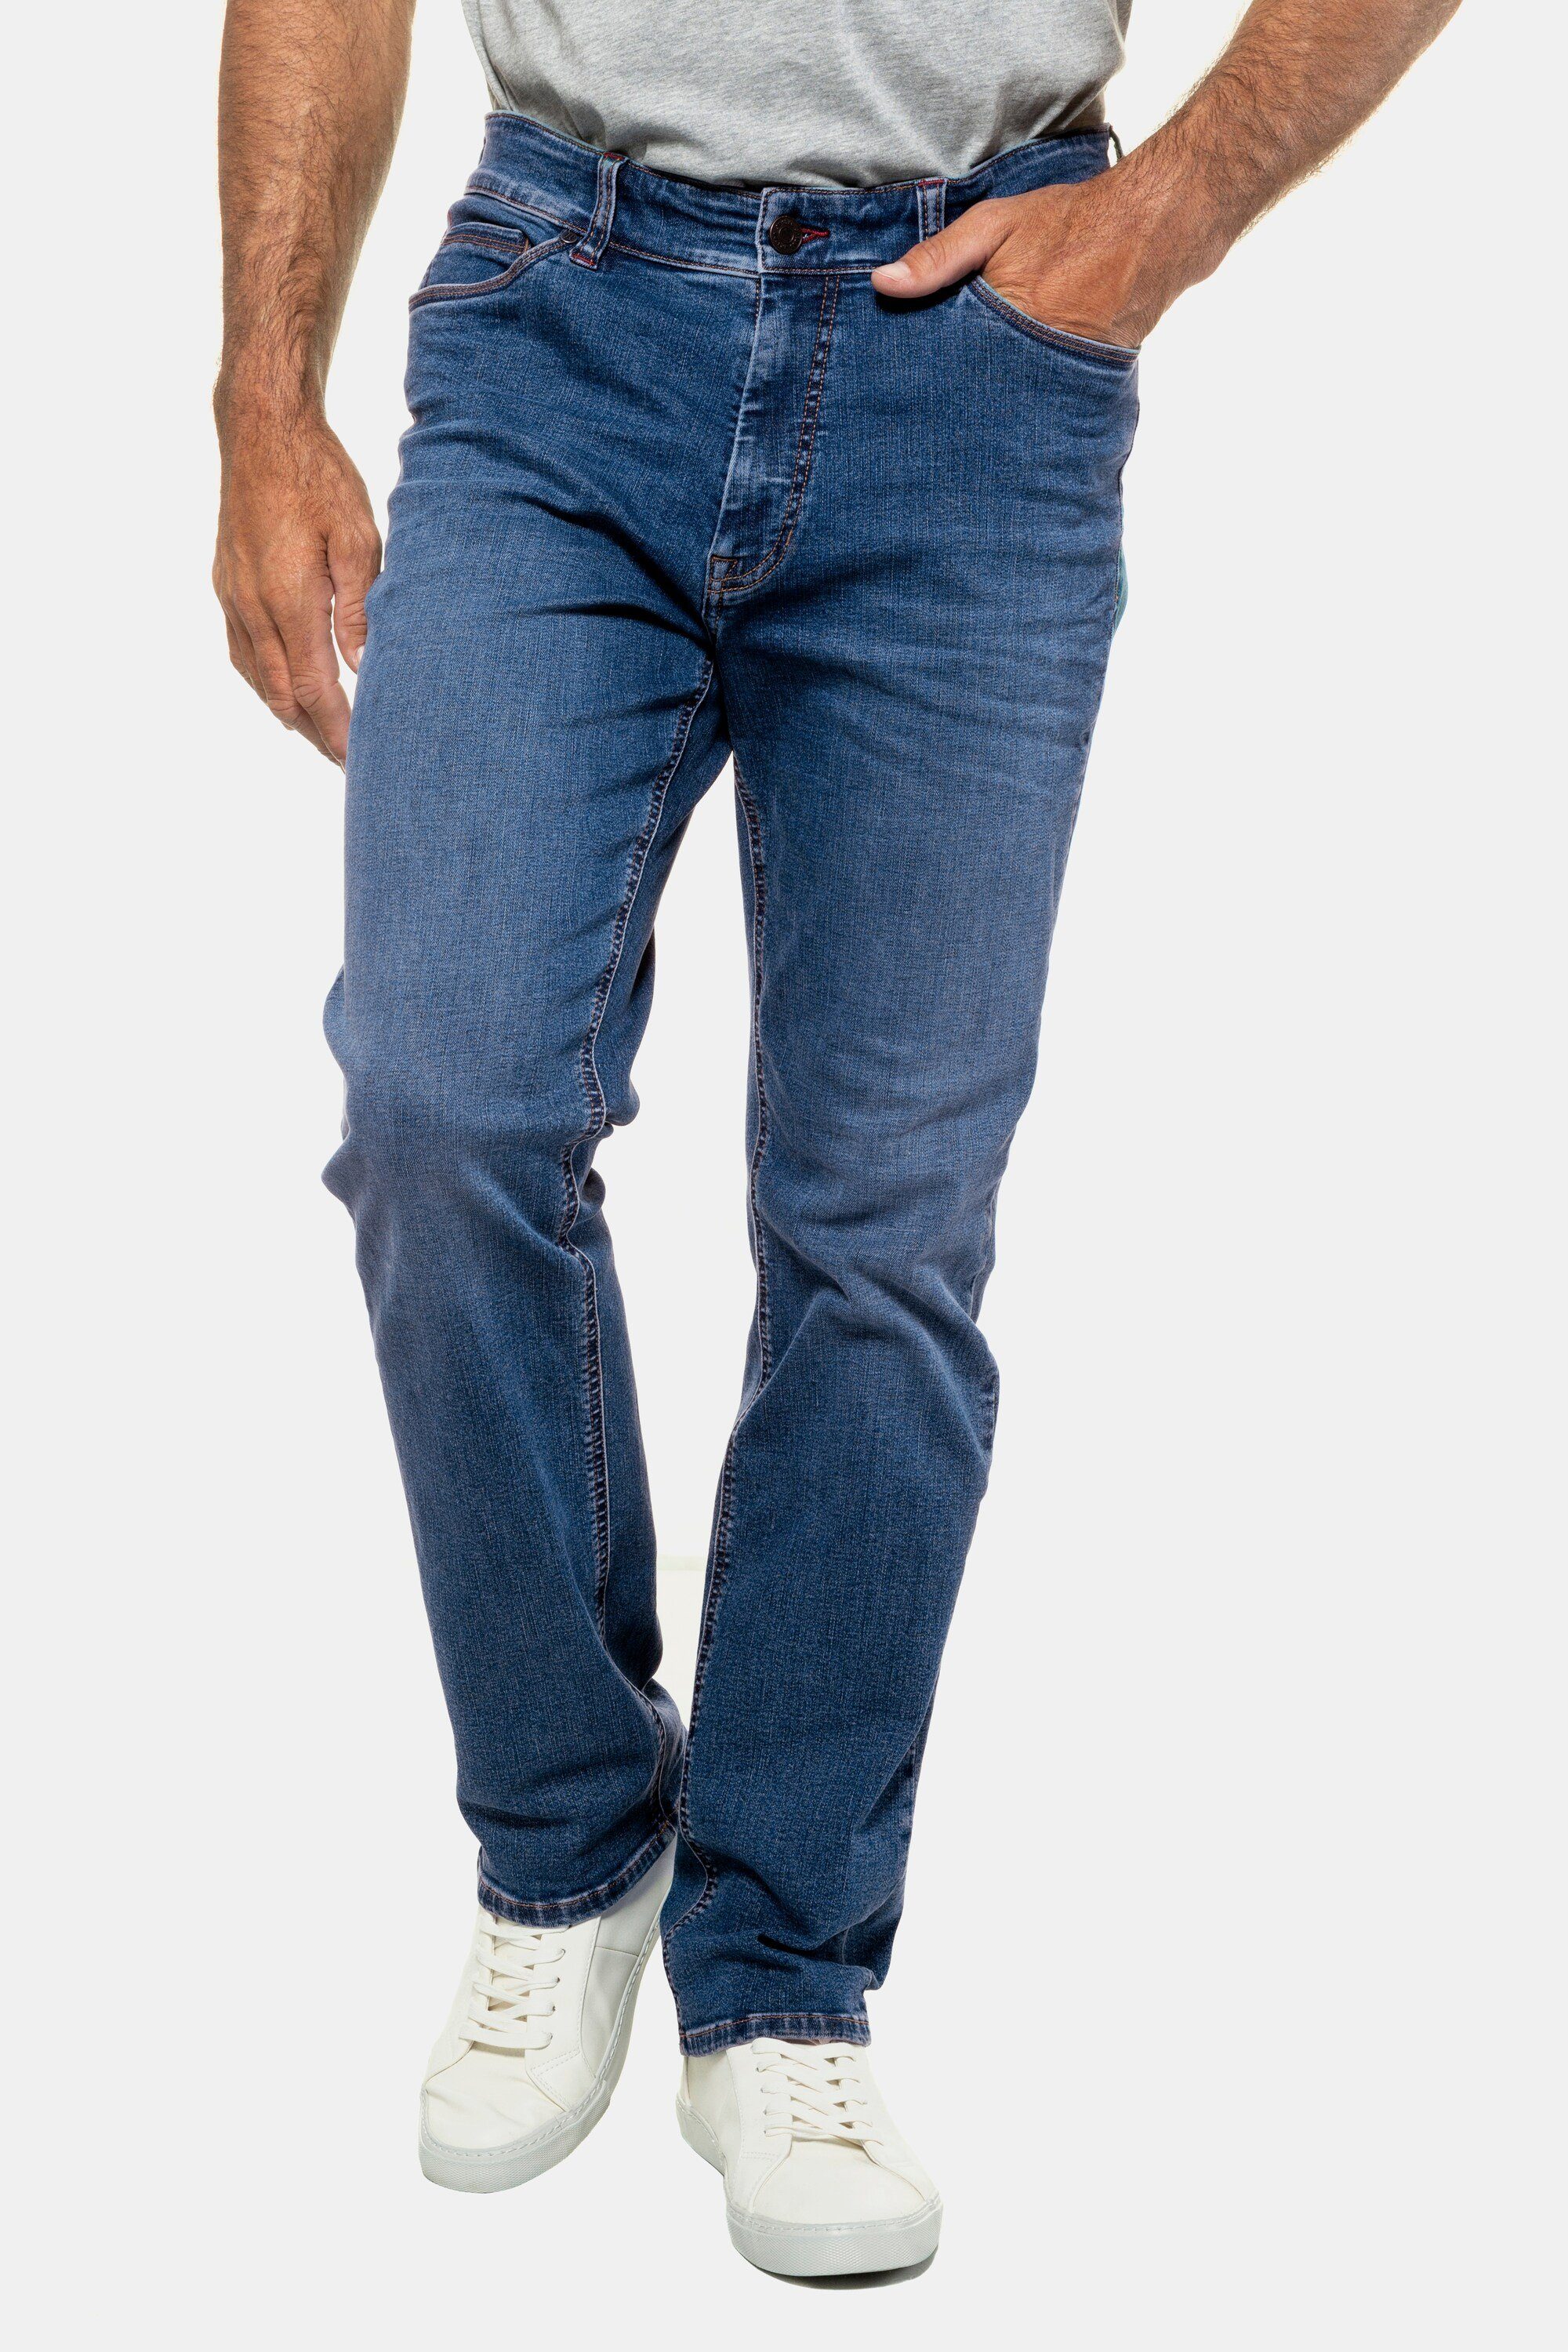 FLEXNAMIC® denim bis JP1880 Fit 70/35 Jeans 5-Pocket-Jeans Denim Gr. blue Straight